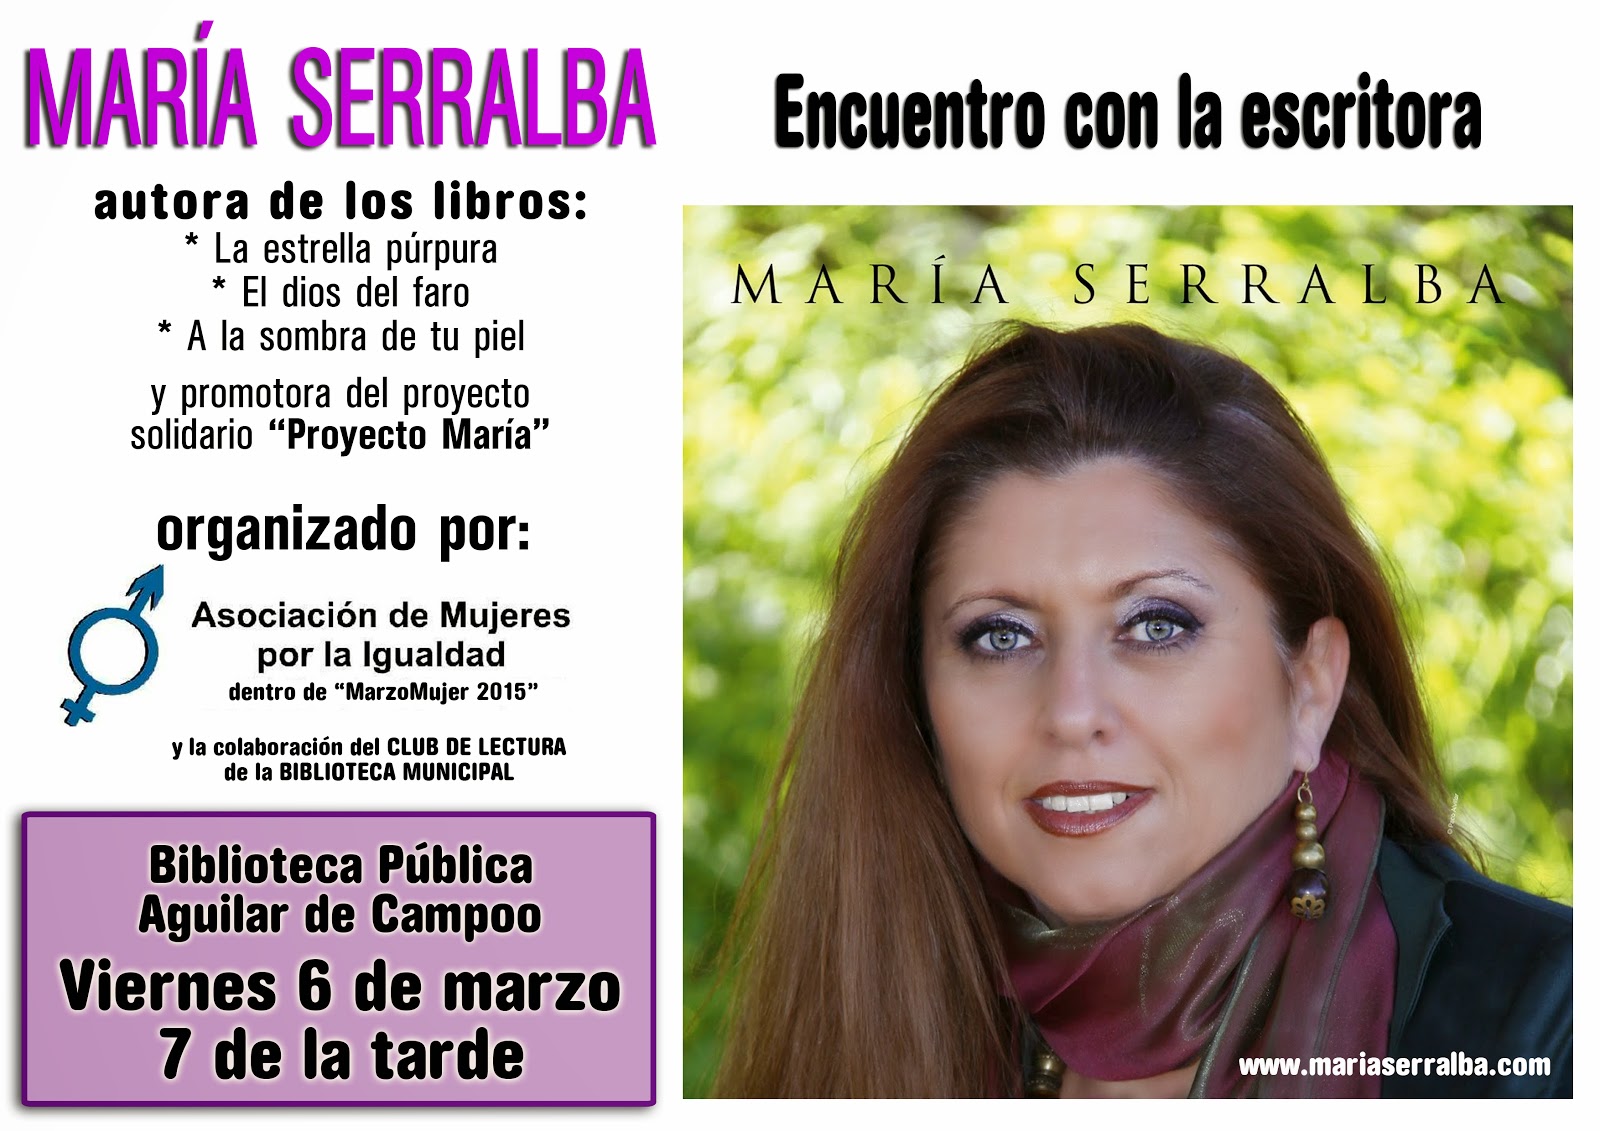 El Blog de María Serralba - Diaro de ruta palentina